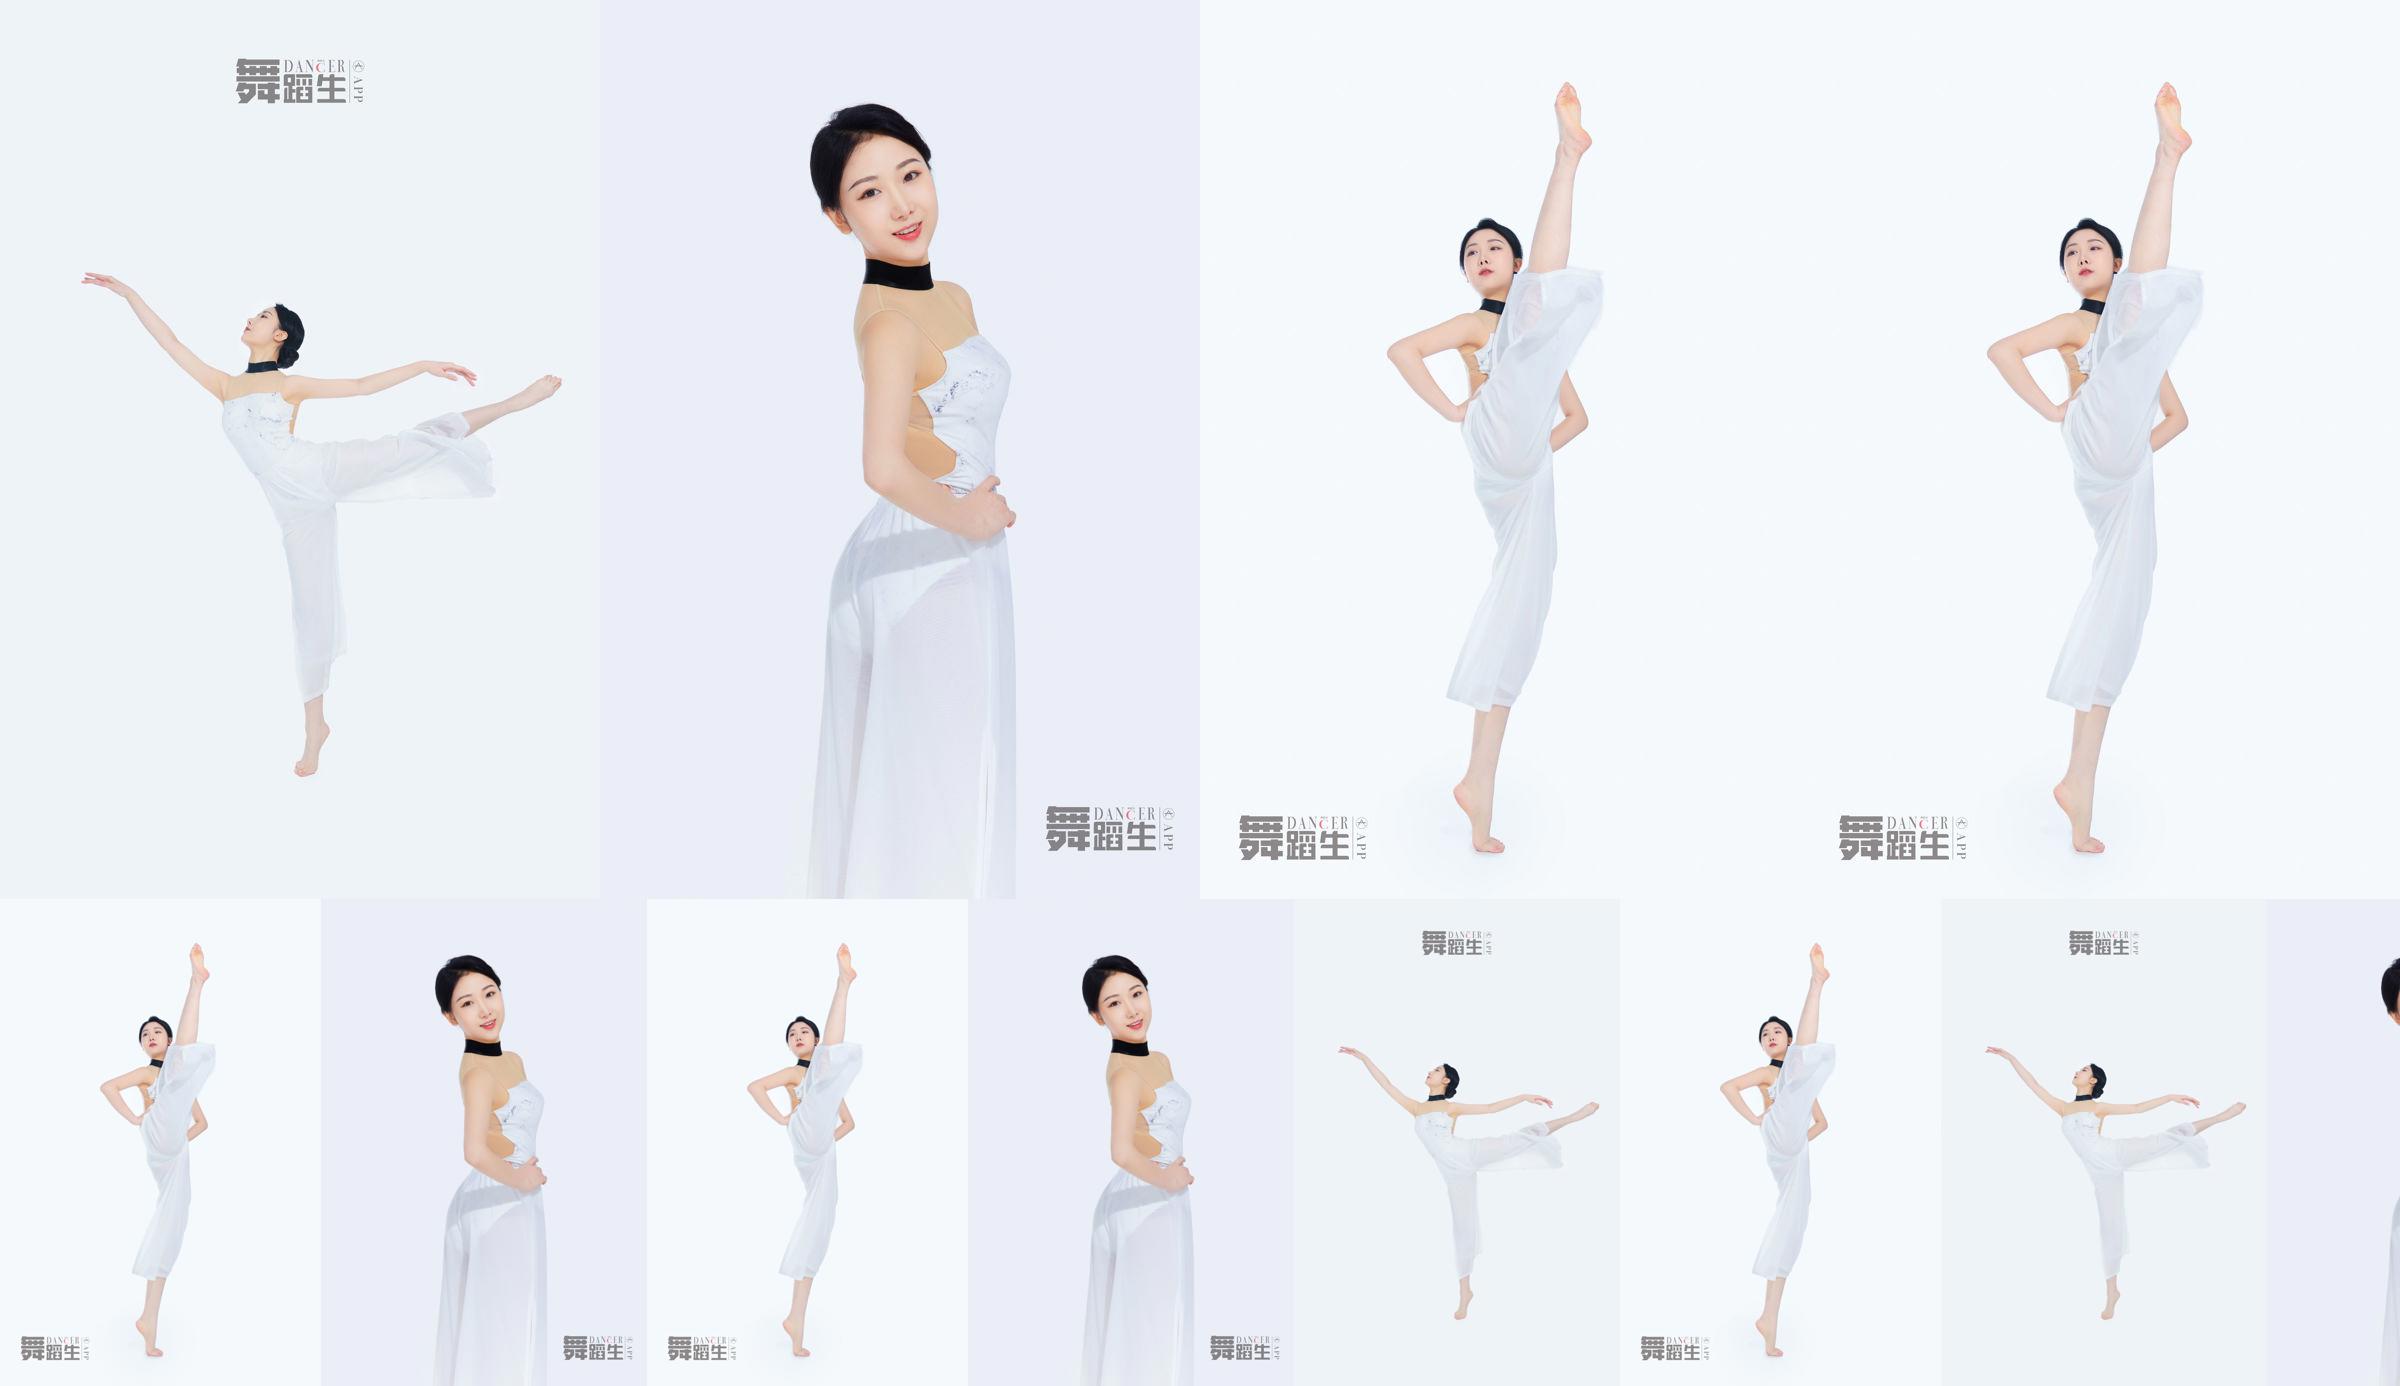 [Carrie Galli] Tagebuch einer Tanzschülerin 081 Xue Hui No.773c54 Seite 1